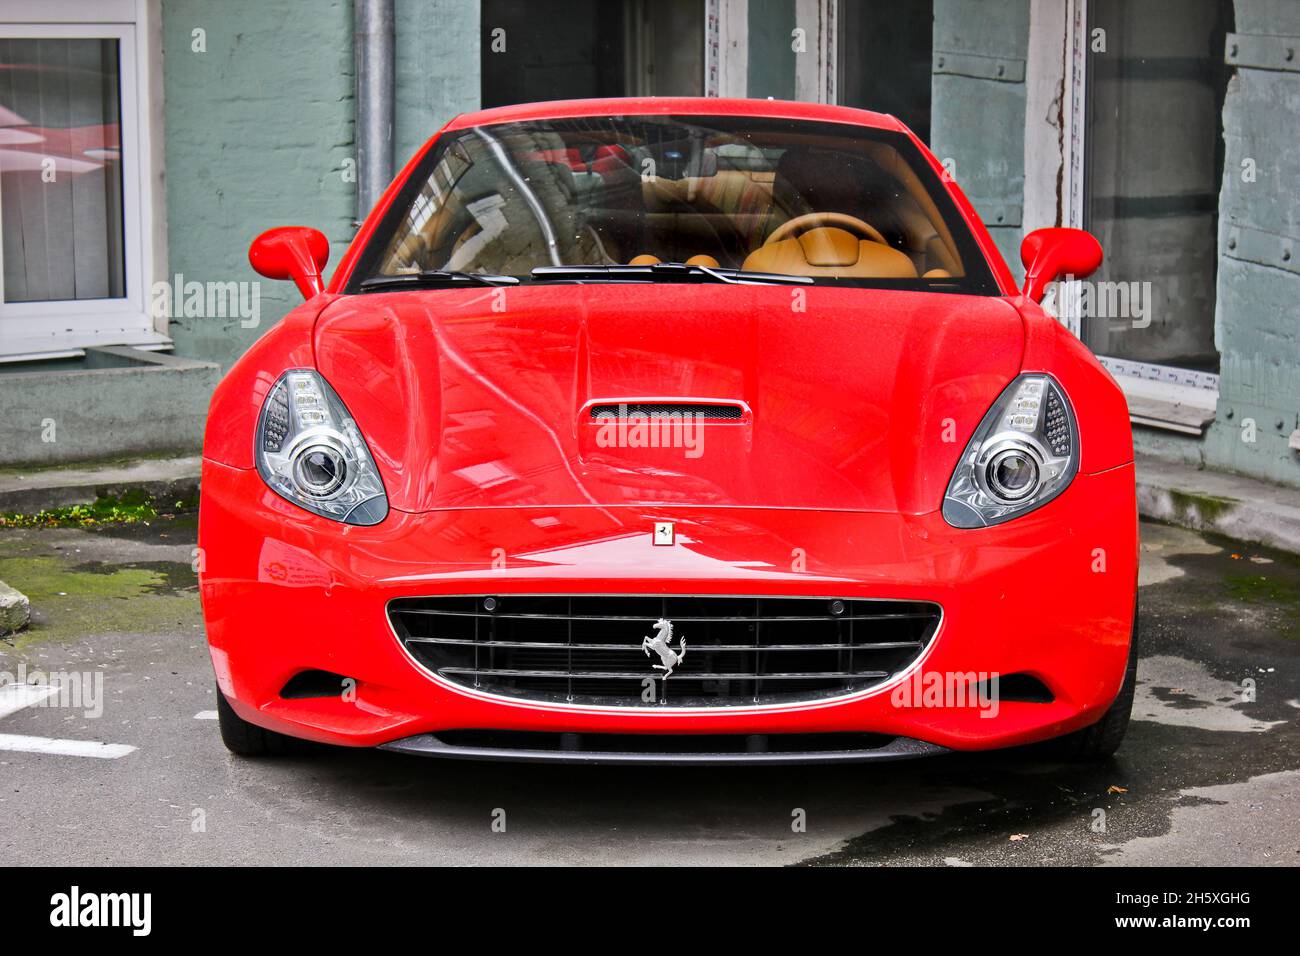 Kiev, Ukraine - April 26, 2015: Red Ferrari California in the city Stock Photo